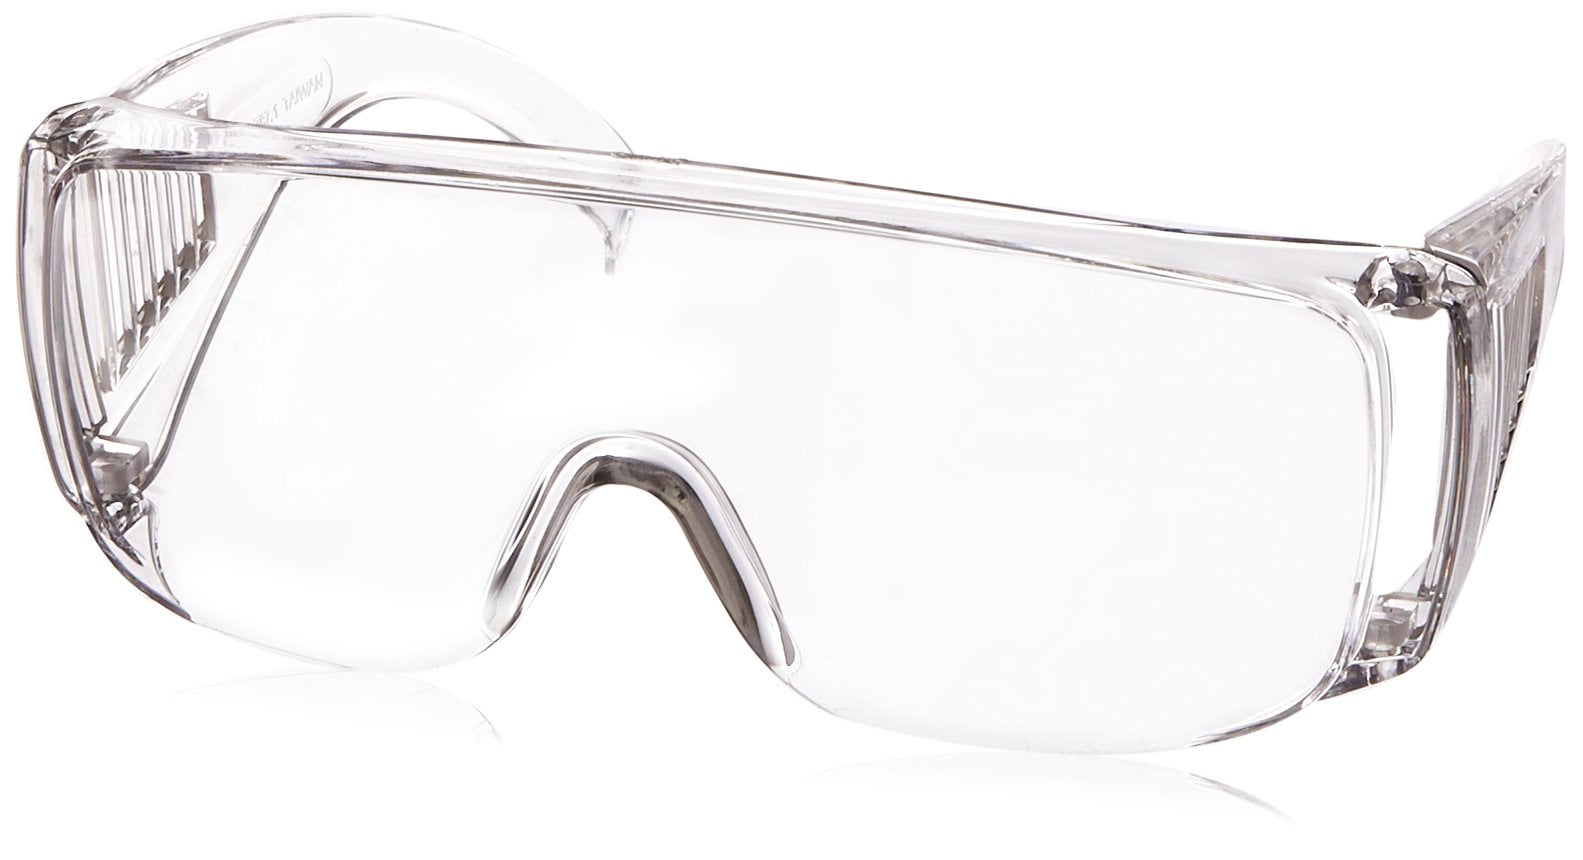 Прозрачные очки технические. Marc Jacobs оправа прозрачный пластик. Защитные очки в лаборатории